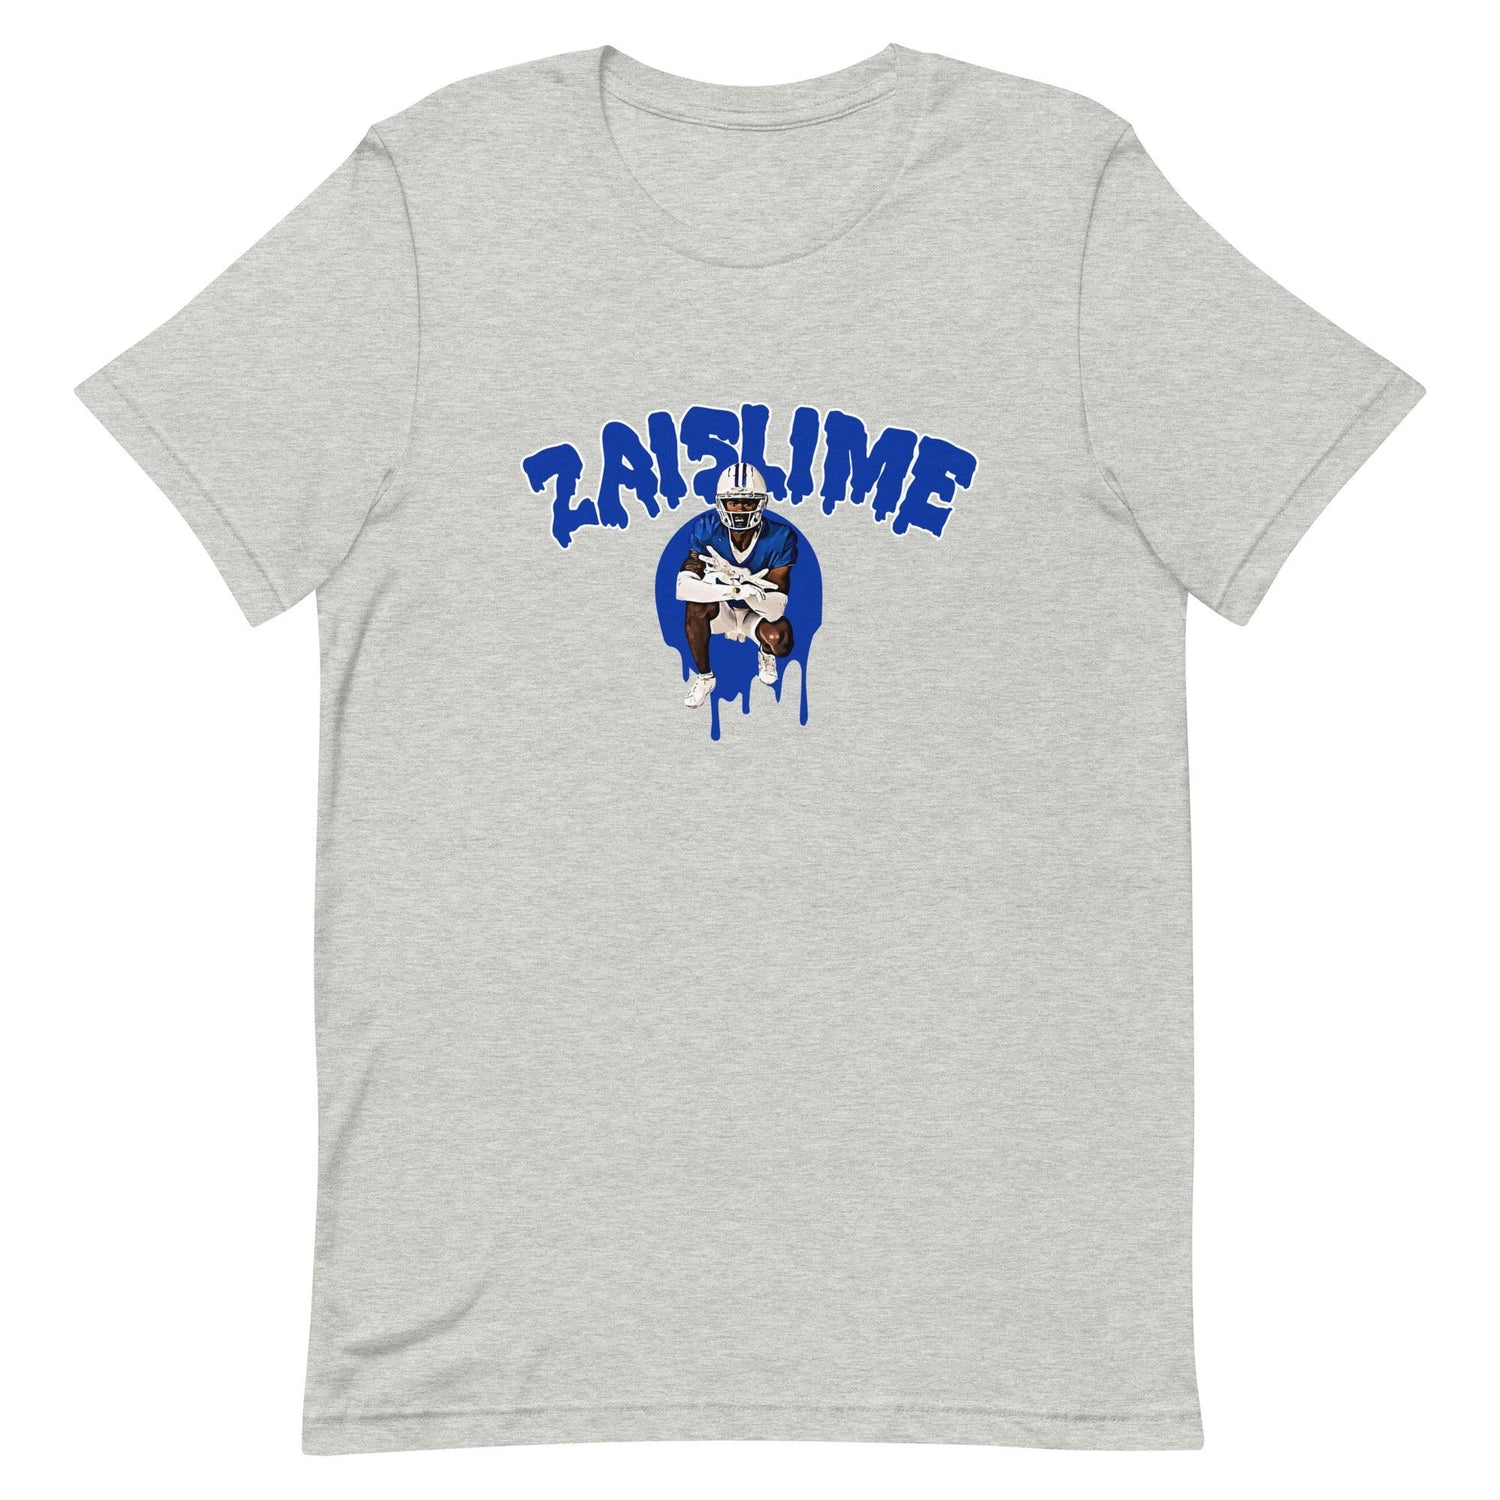 Izaiah Gathings “Zaislime” t-shirt - Fan Arch